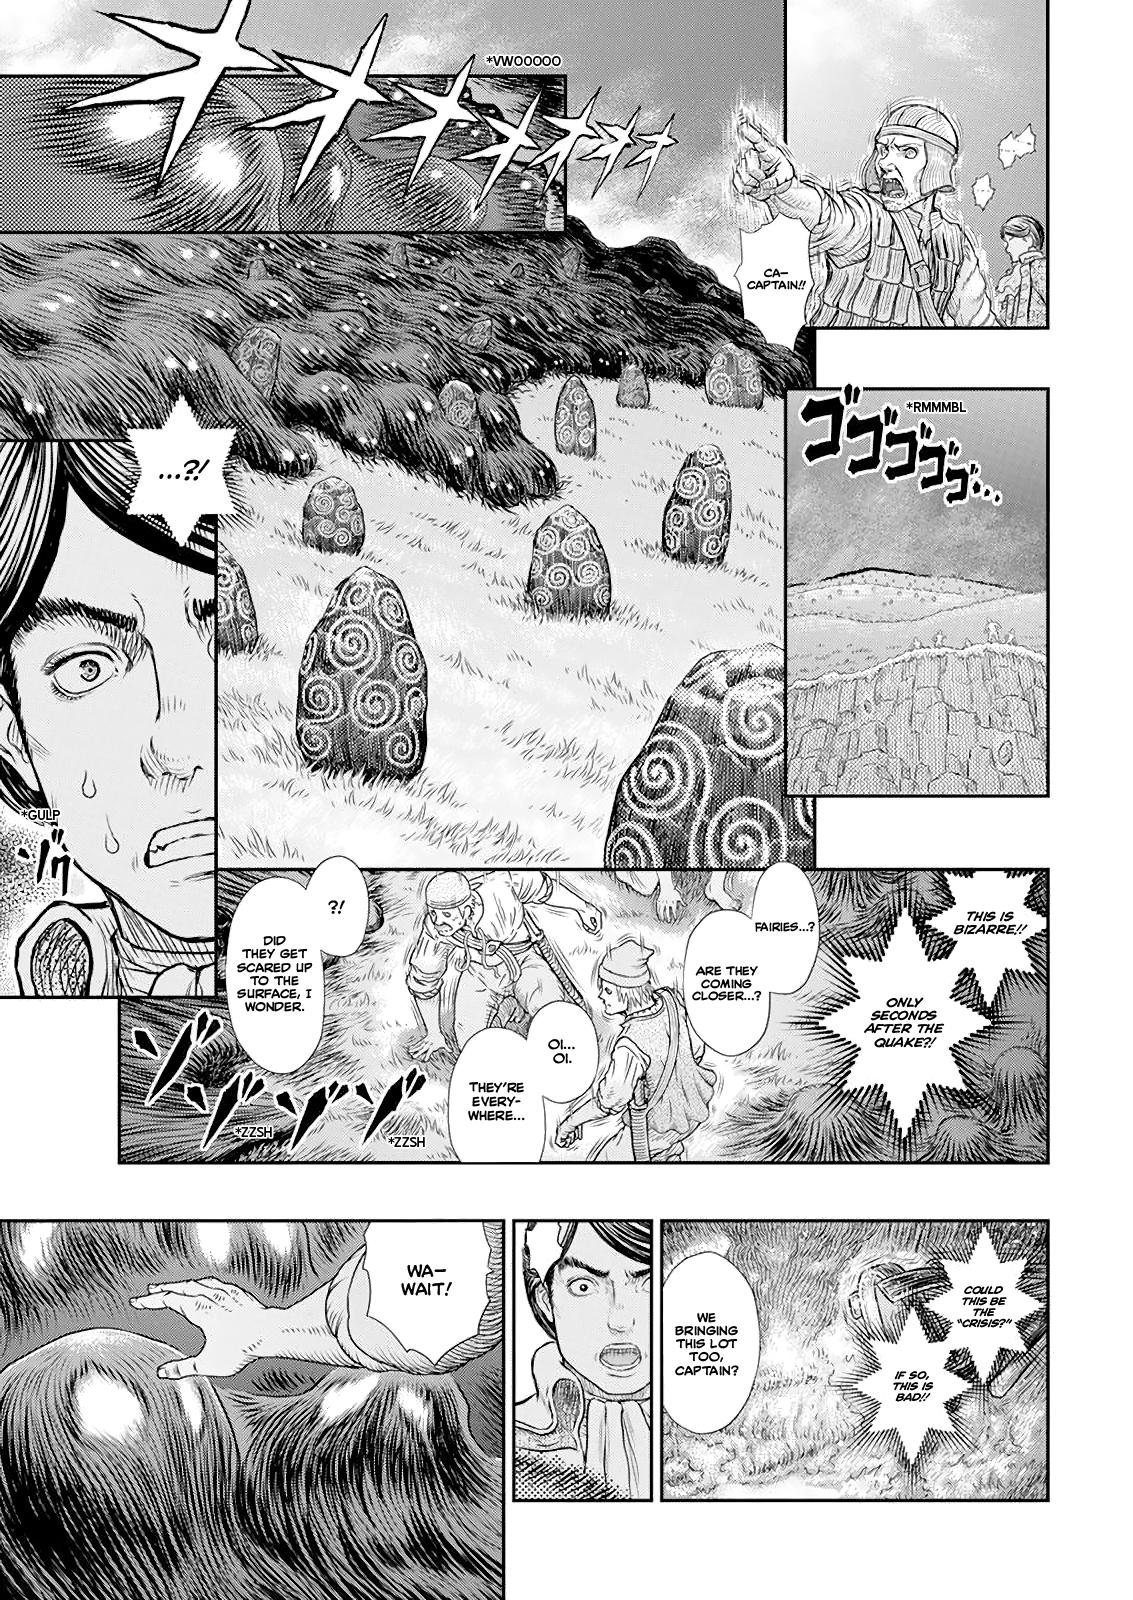 Berserk Manga Chapter 368 image 10